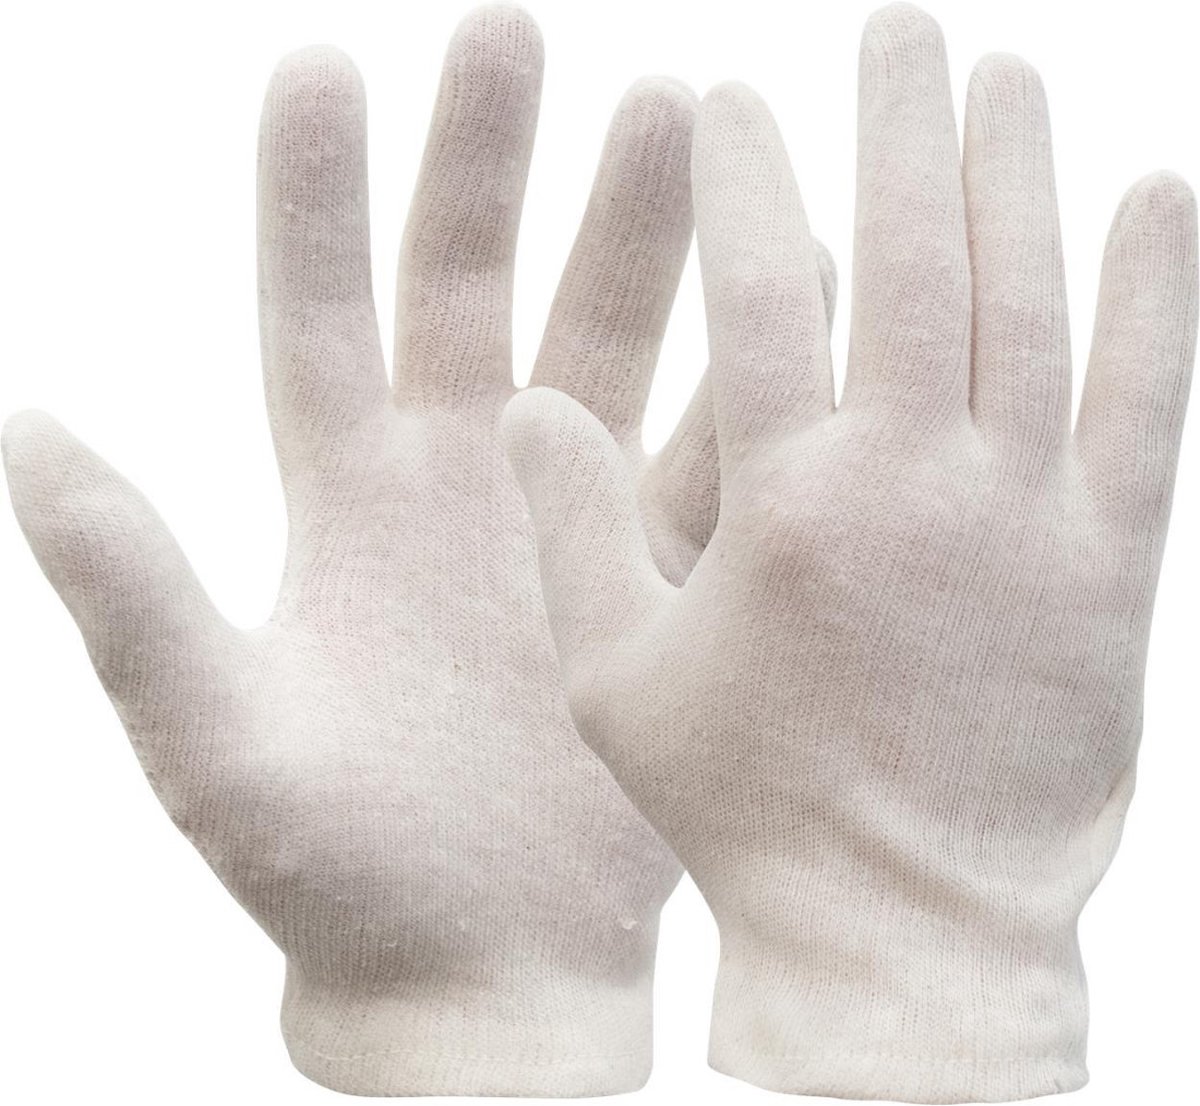 Interlock handschoen, herenmaat (200 grams) écru - 12 paar maat XL/10